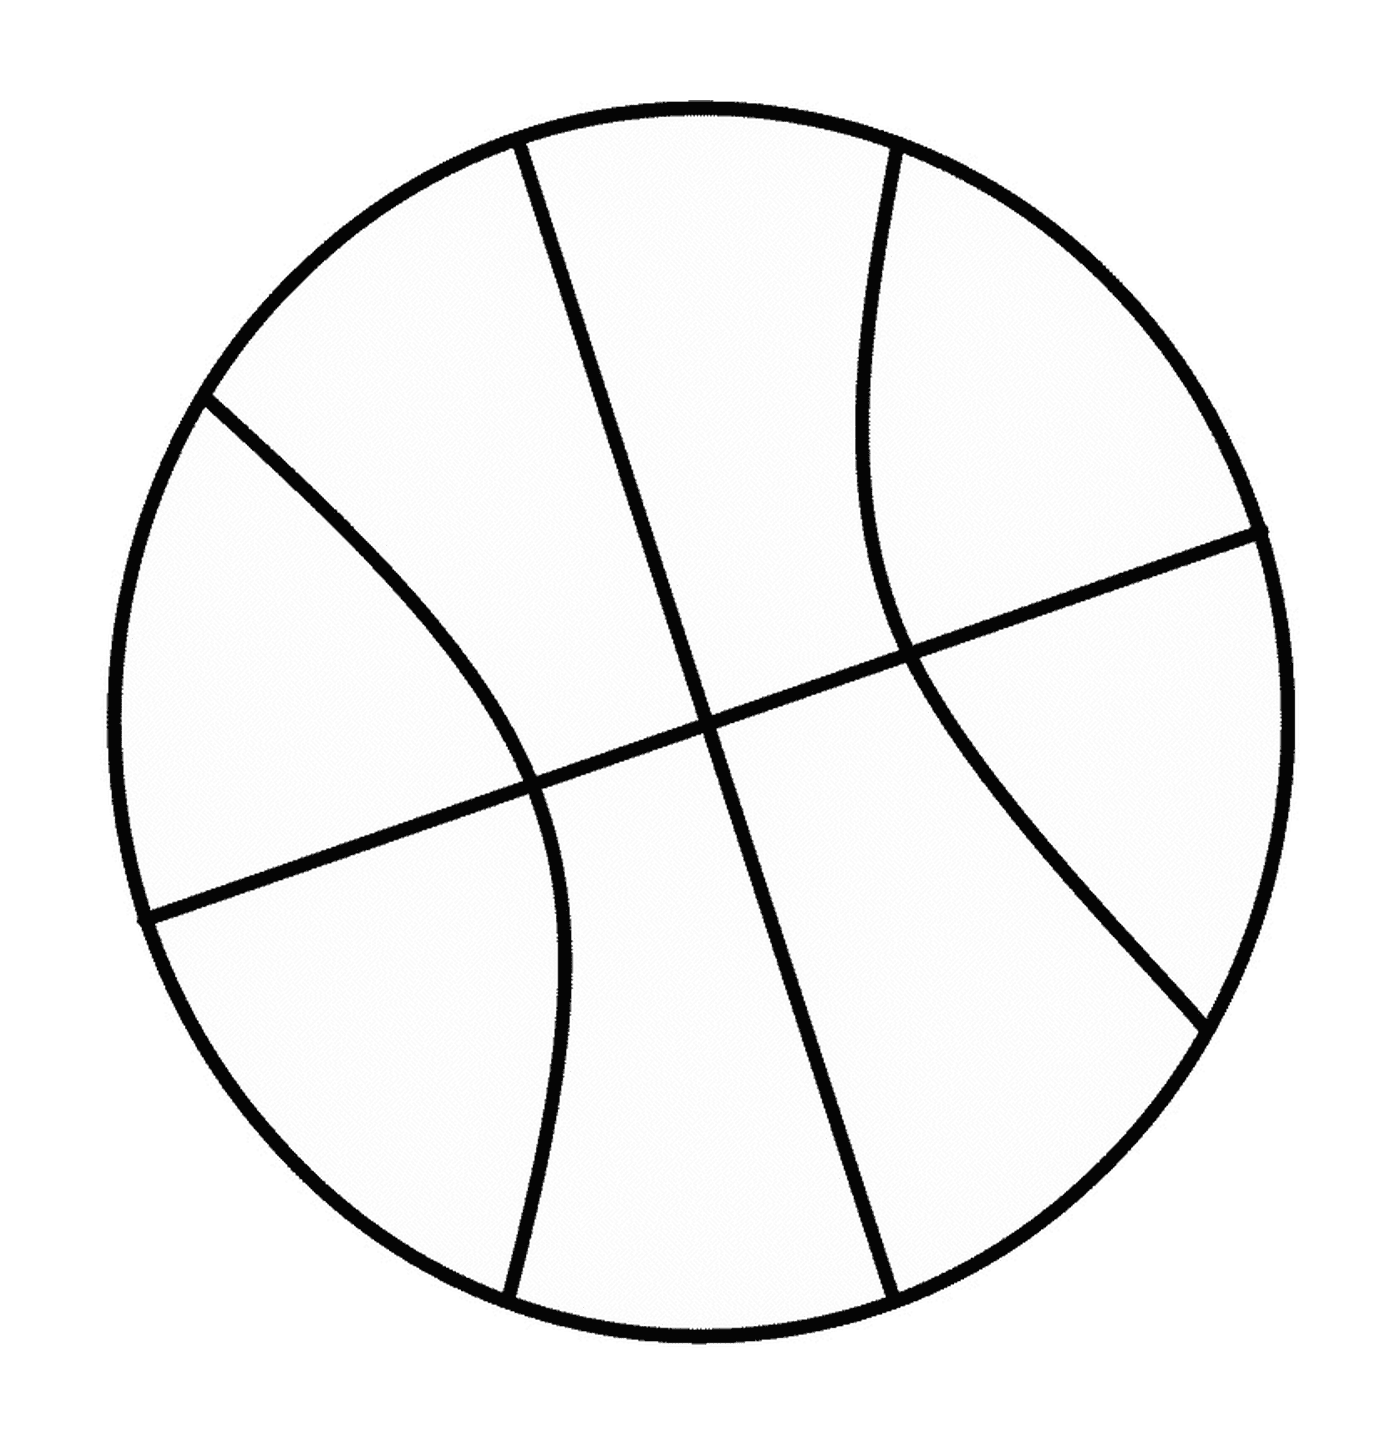   Image d'un ballon de basket 